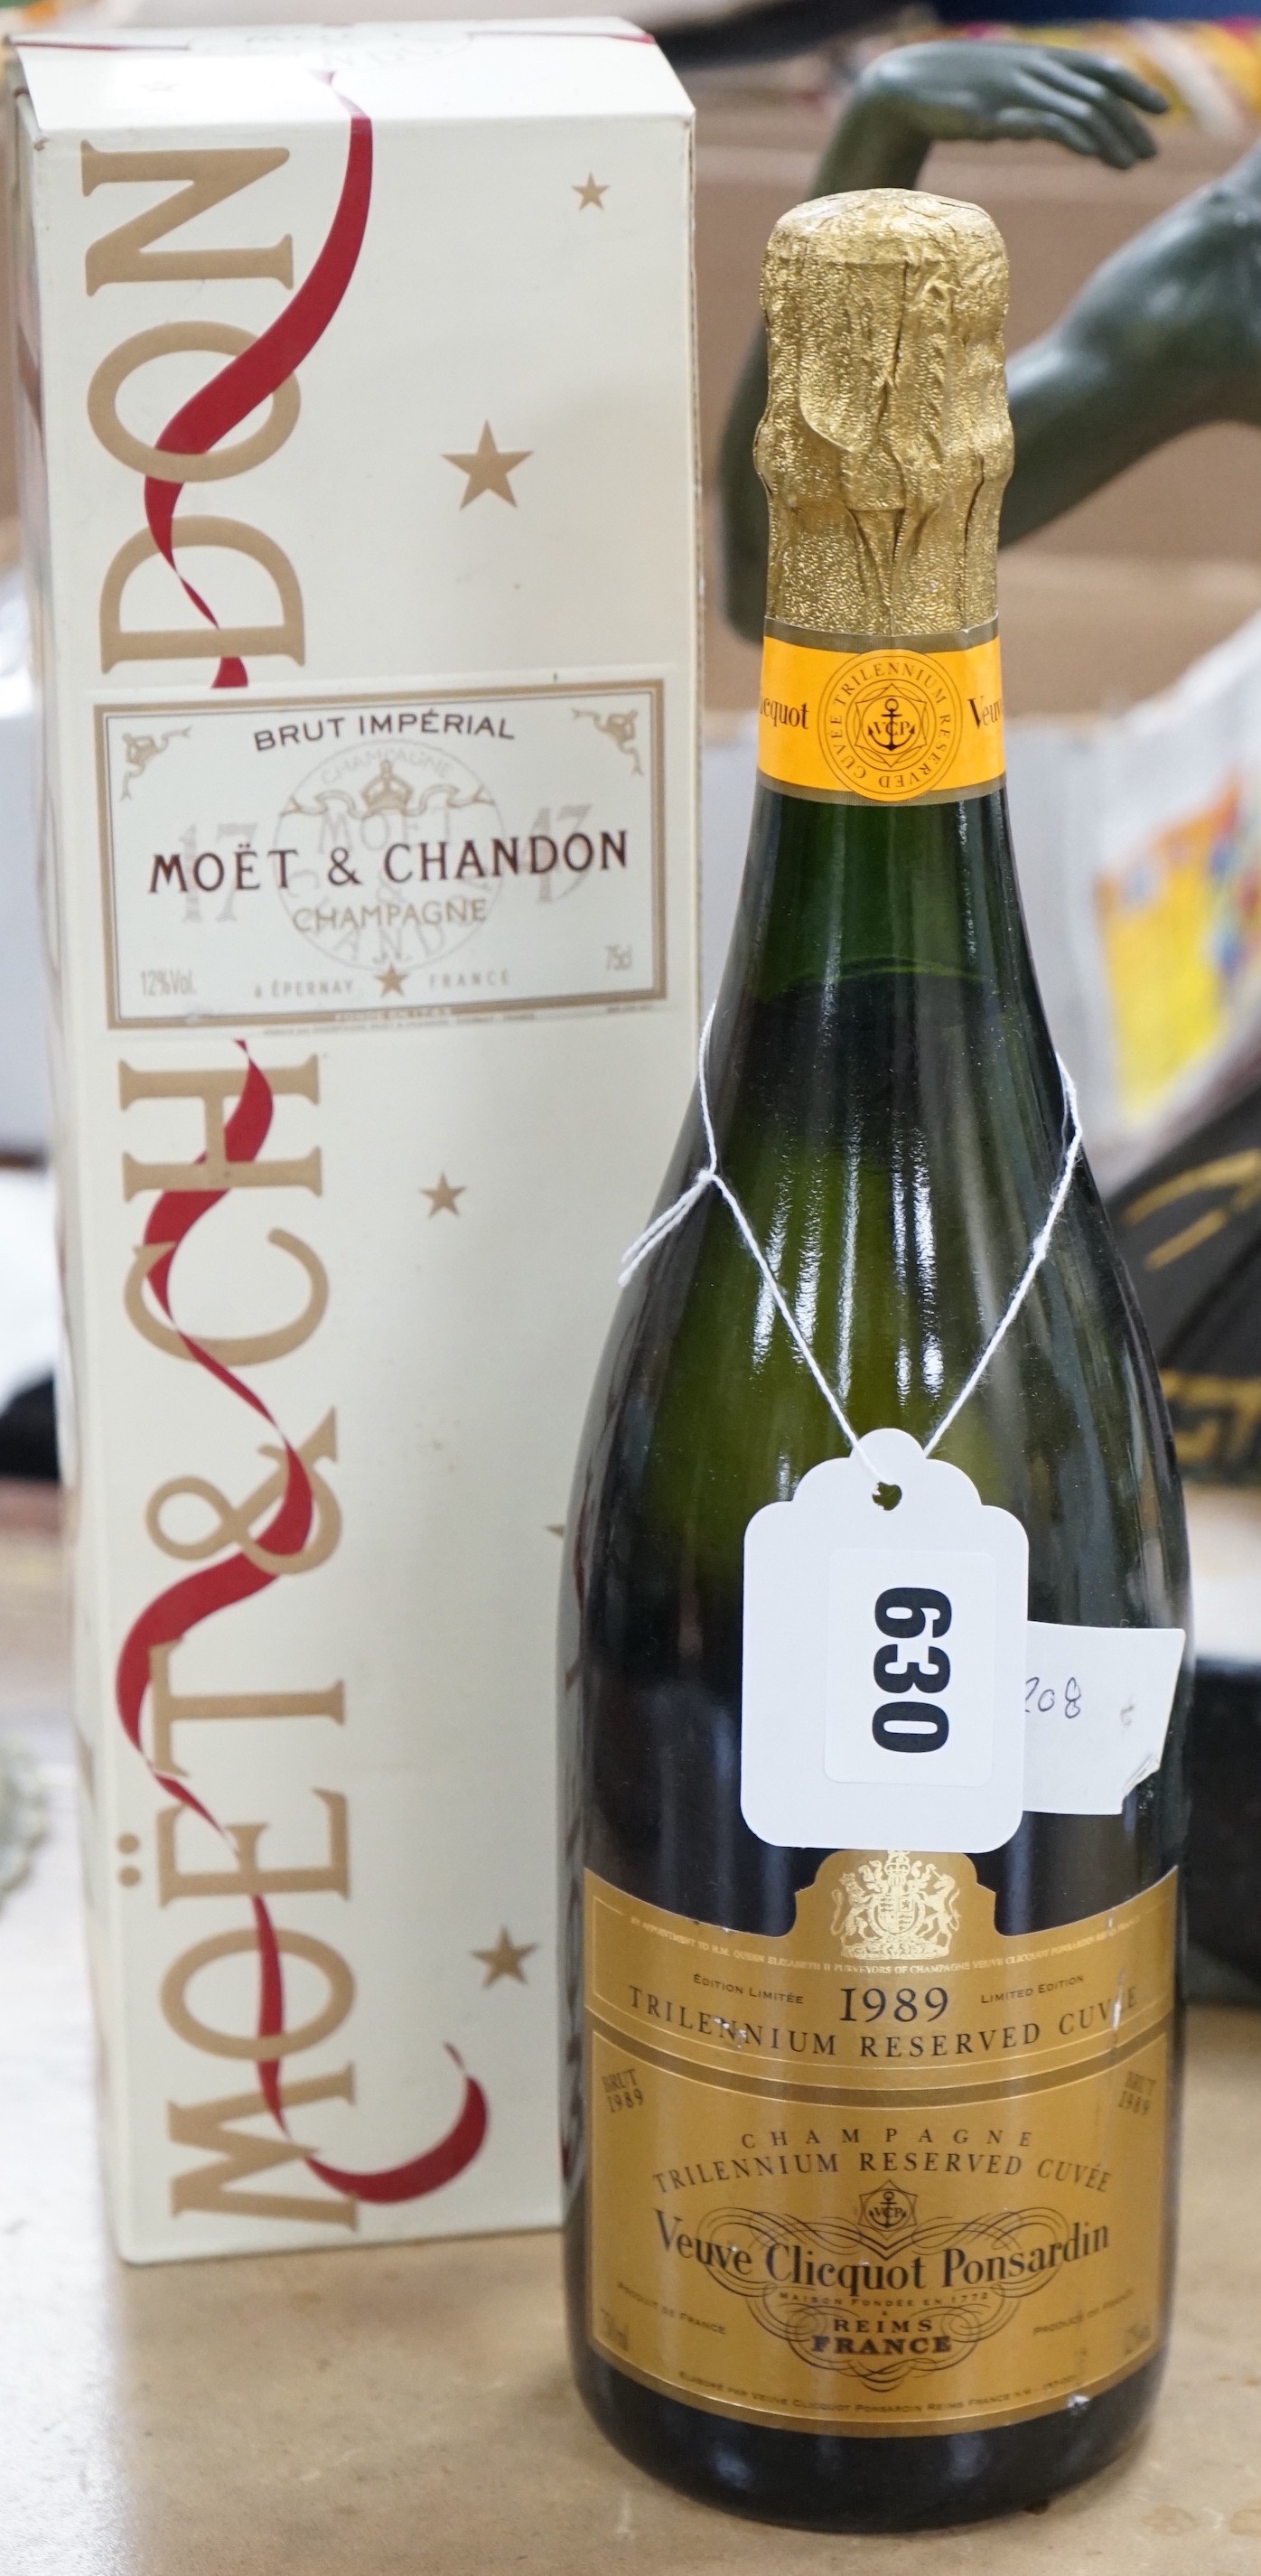 A 1989 bottle of Veuve Cliquot Ponsardin, together with a boxed bottle of Brut Moët & Chandon                                                                                                                               